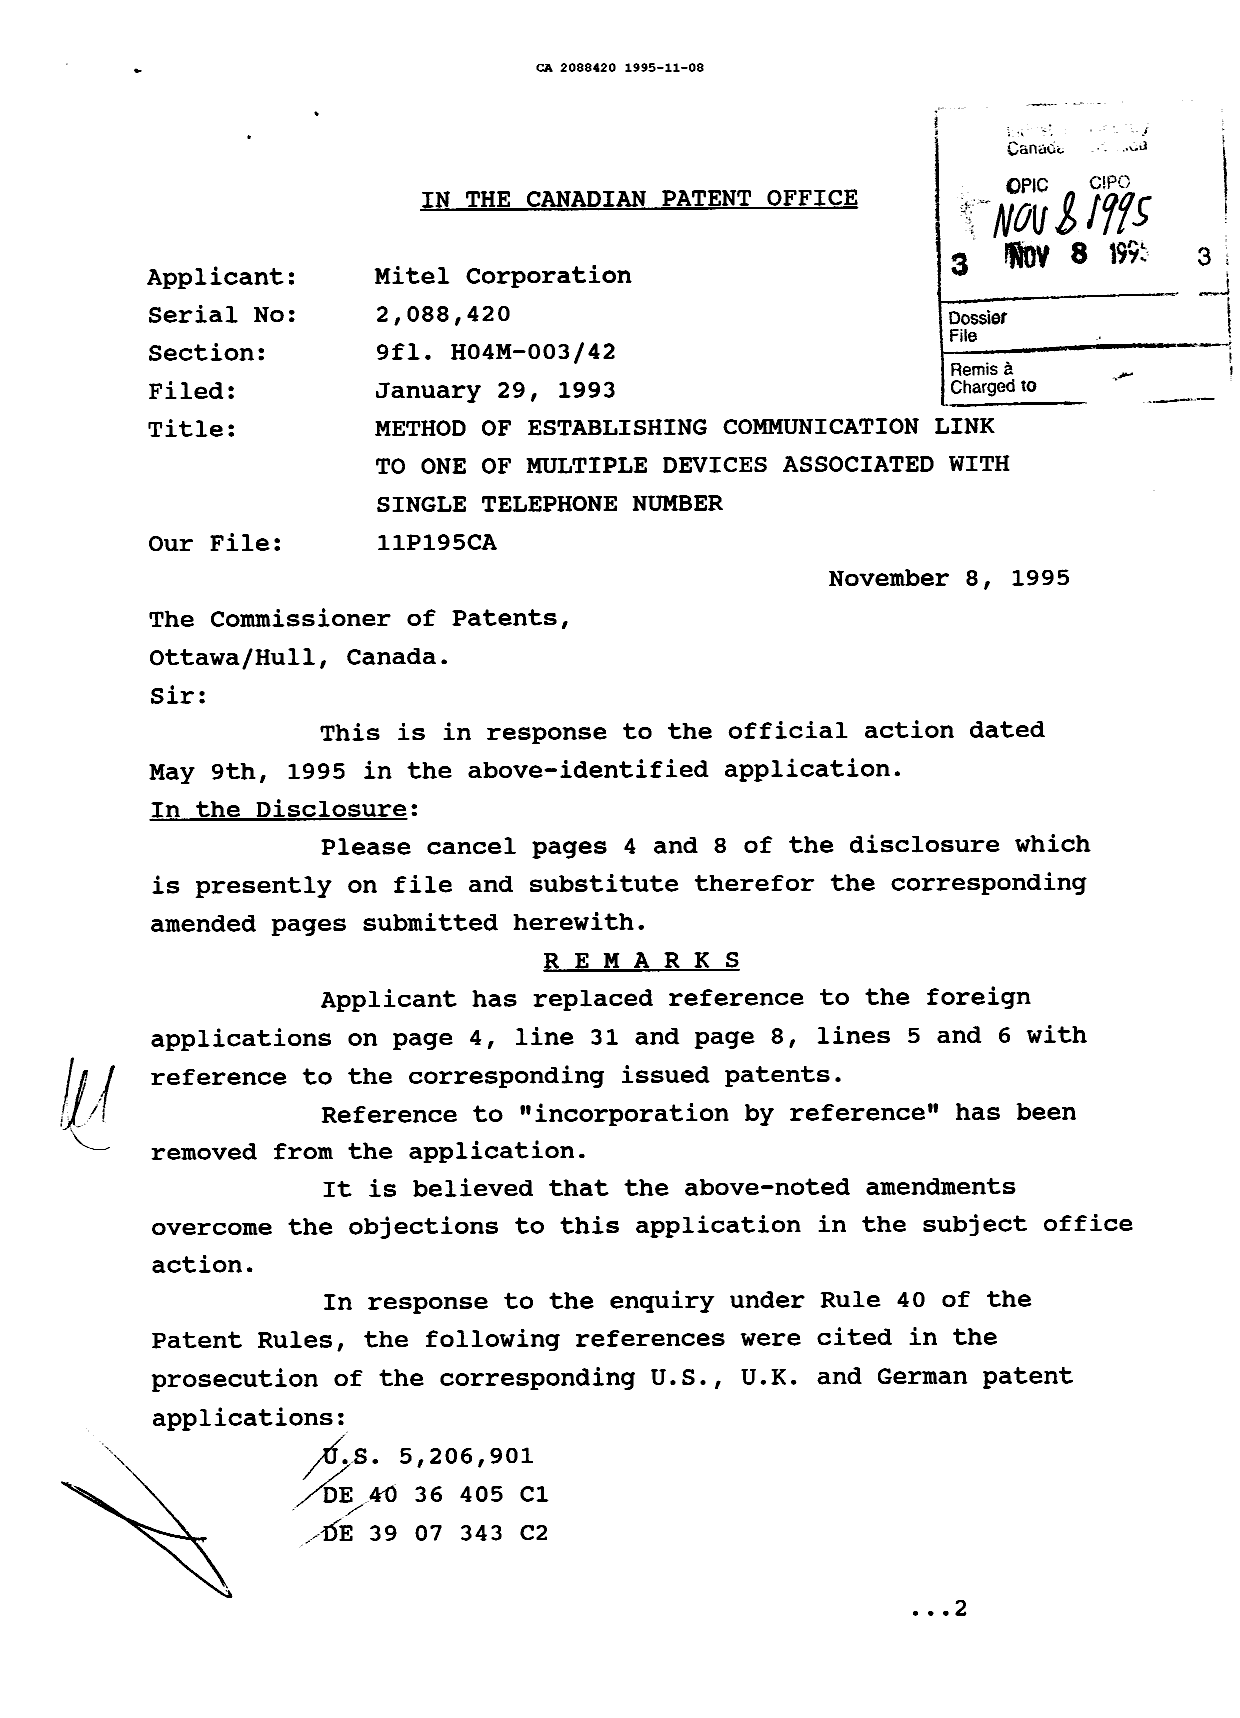 Document de brevet canadien 2088420. Correspondance de la poursuite 19951108. Image 1 de 2